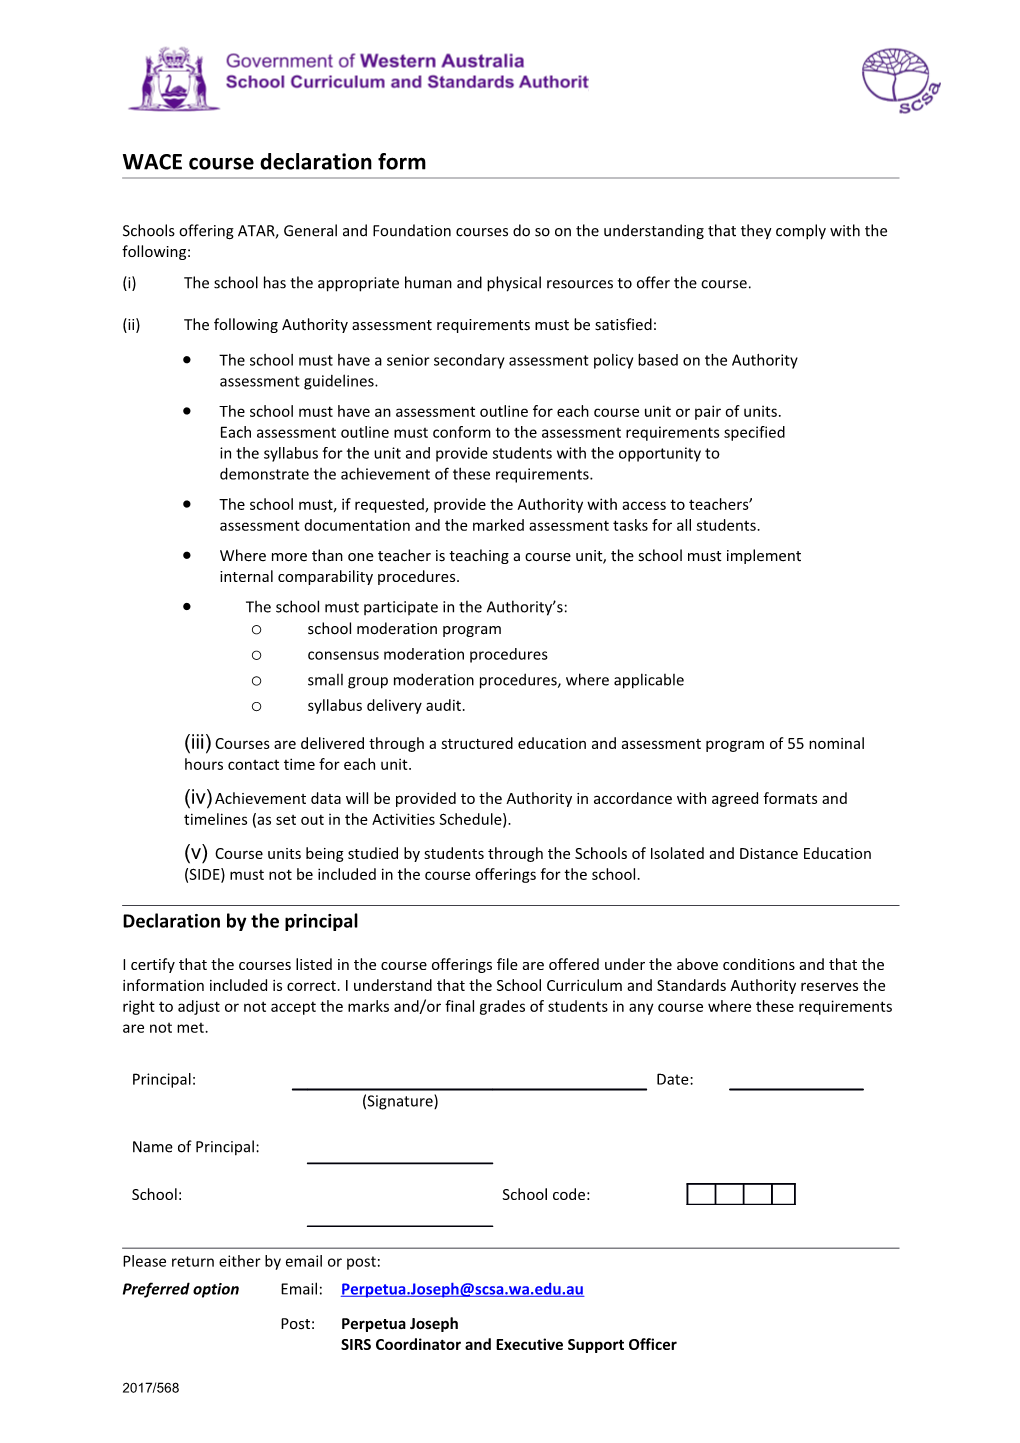 WACE Course Declaration Form